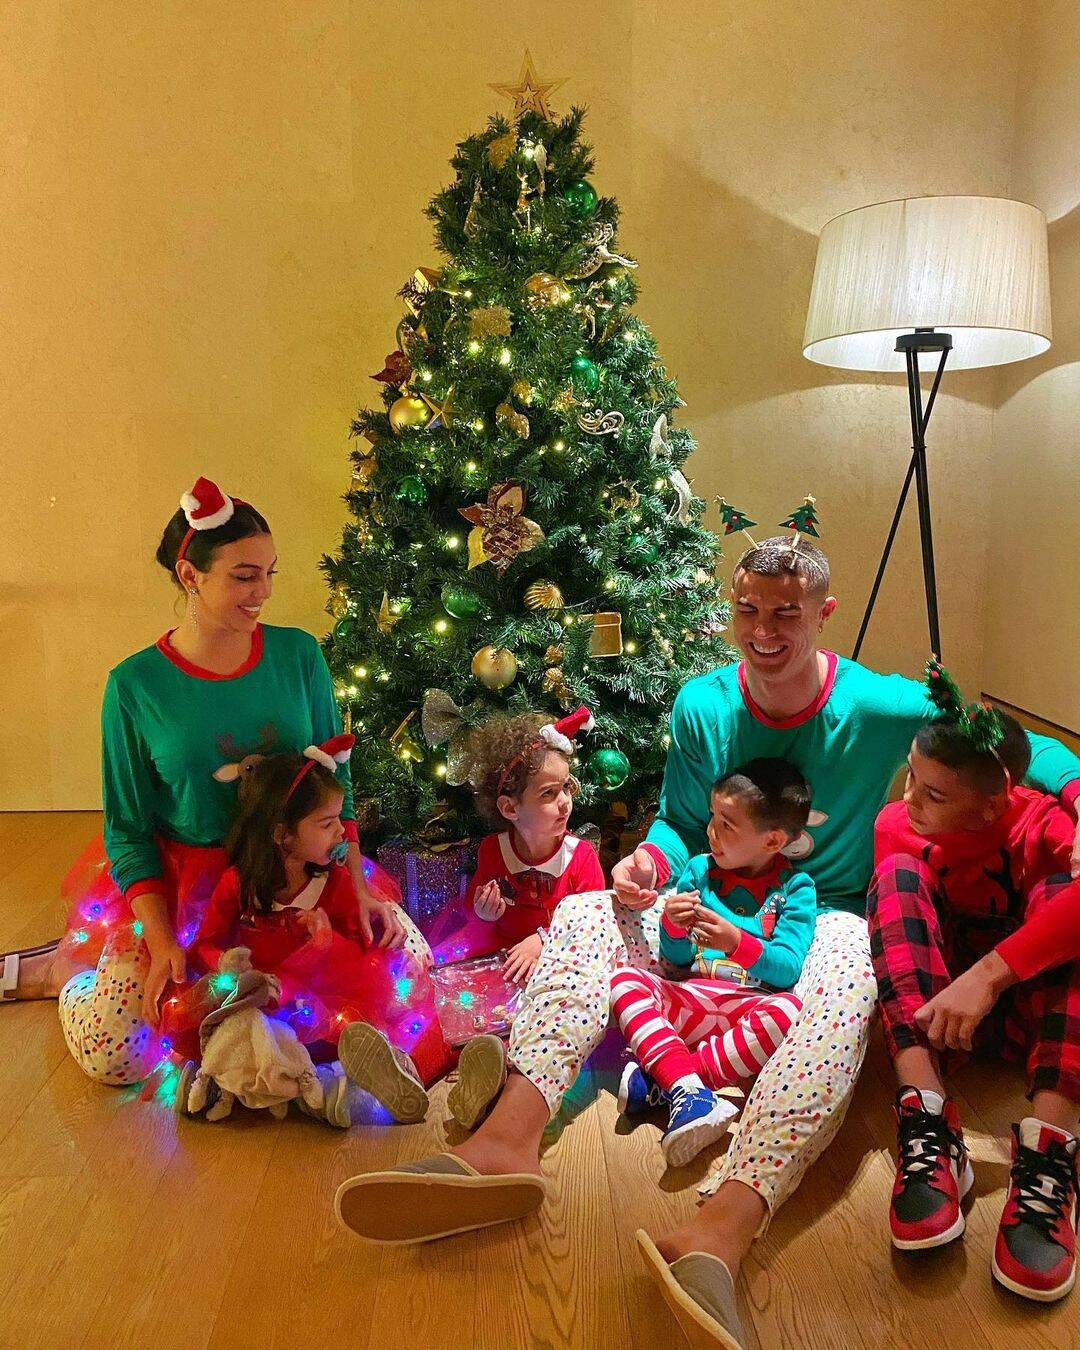 Cristiano Ronaldo e família. Foto: Reprodução/Instagram